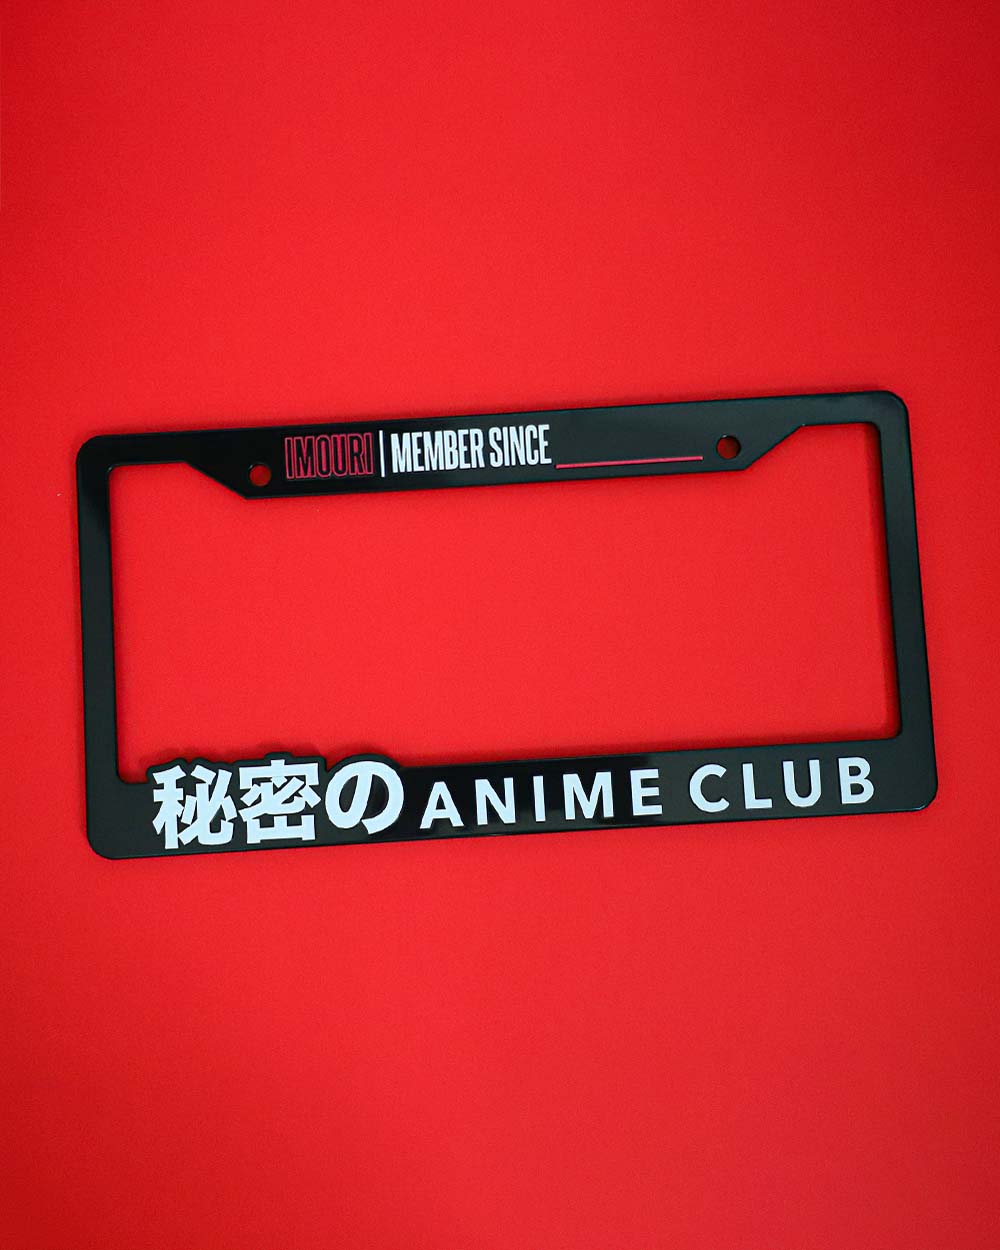 Anime License Plate Frame Glitter Bling Alumina India  Ubuy